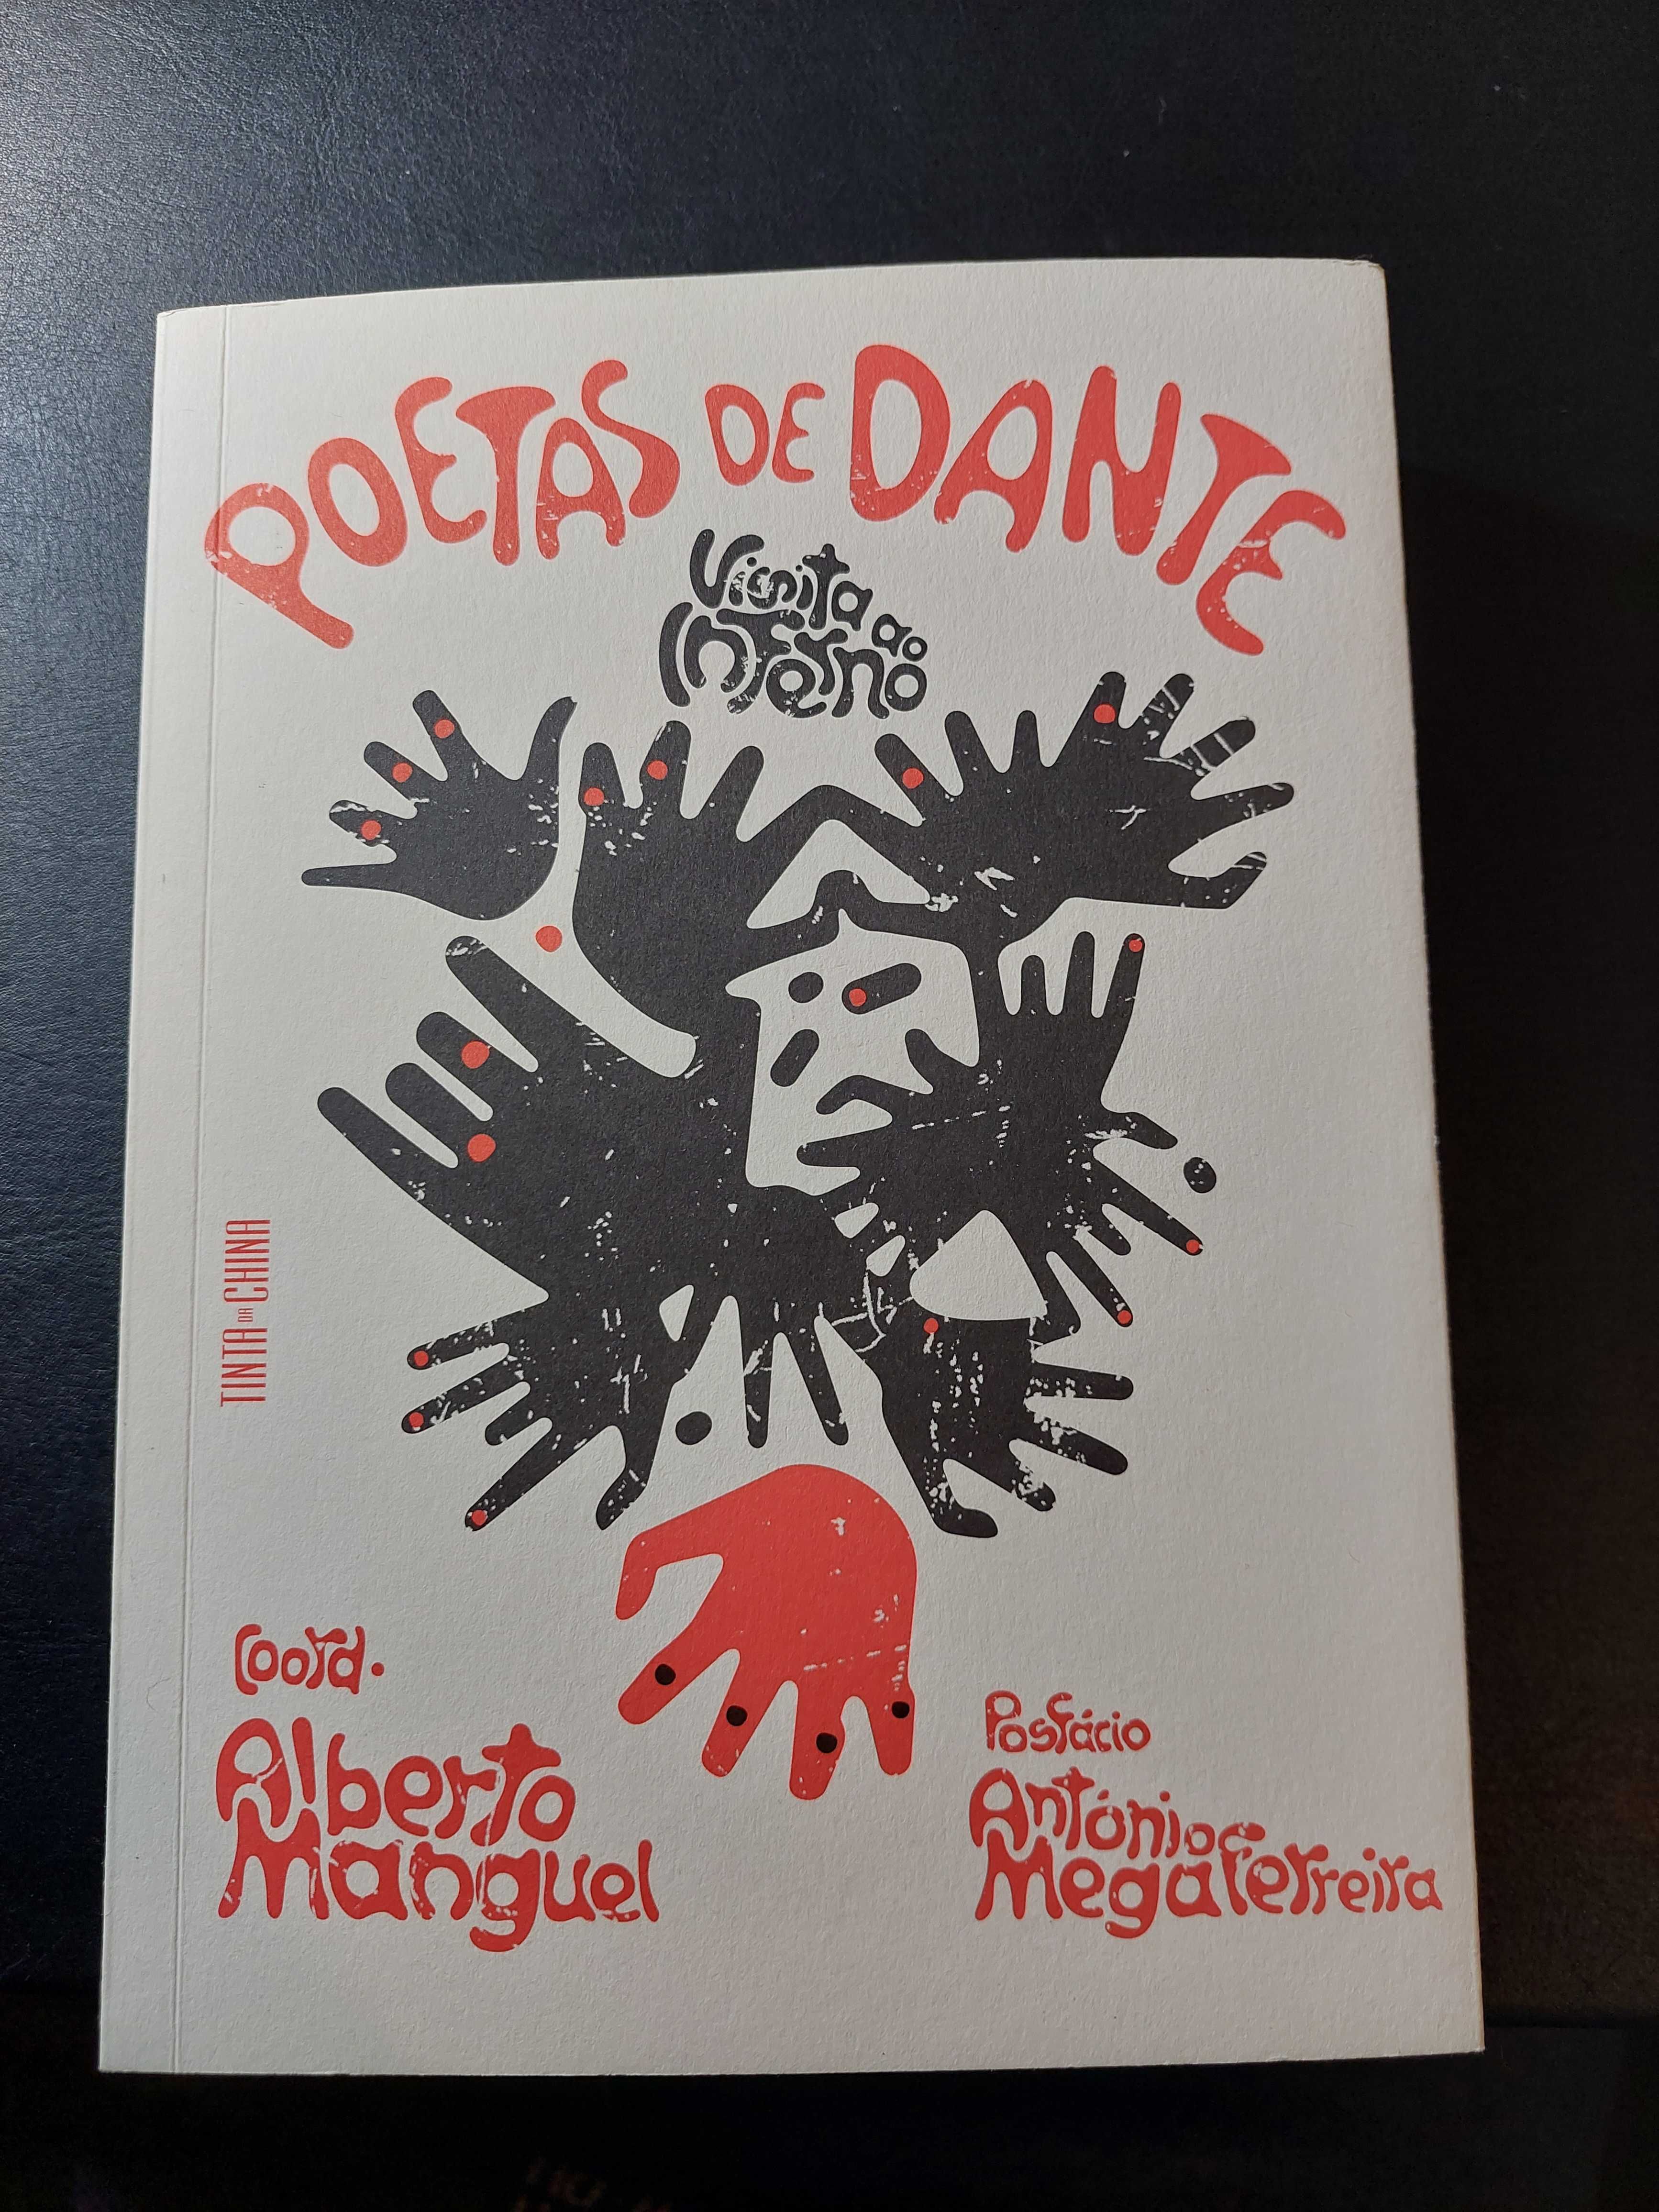 Poetas de Dante - Vários Poetas